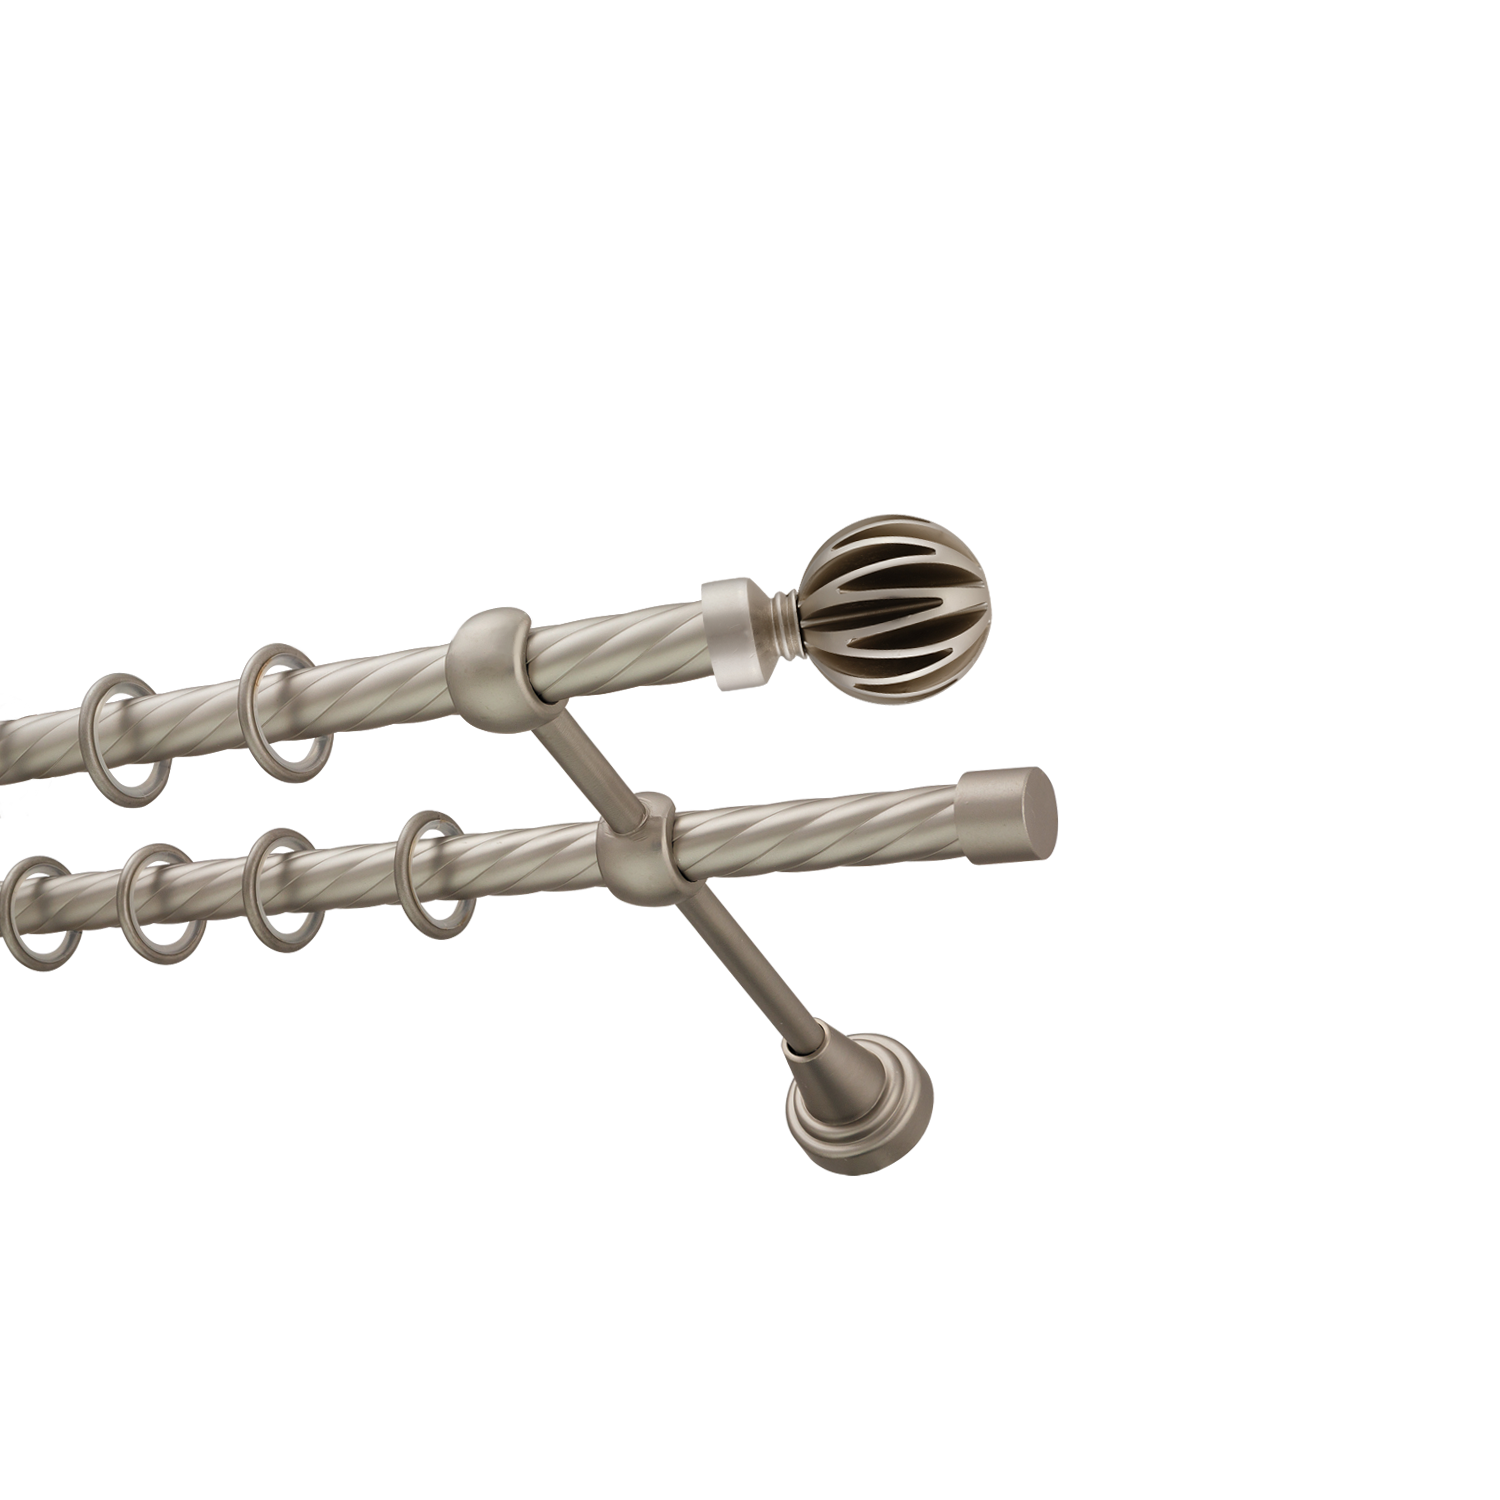 Металлический карниз для штор Шафран, двухрядный 16/16 мм, сталь, витая штанга, длина 200 см